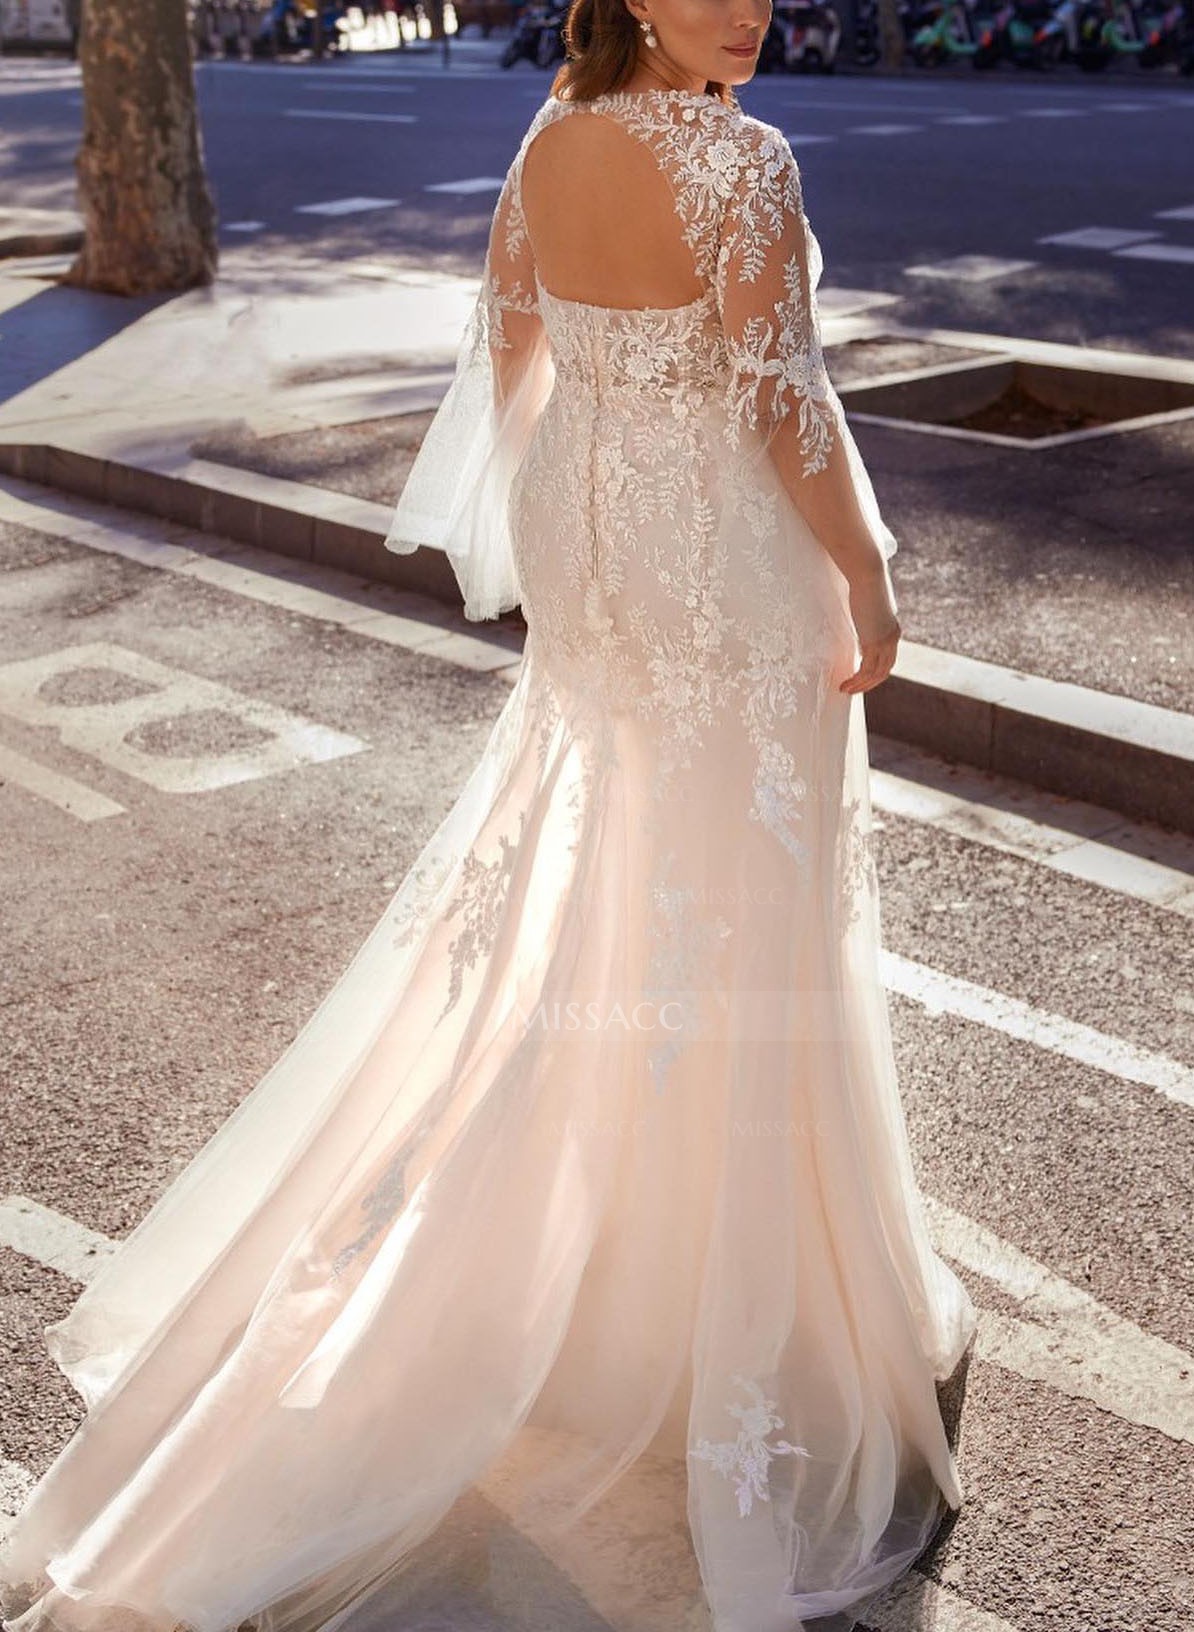 Lace Long Sleeves V-Neck Sheath/Column Wedding Dresses With Back Hole